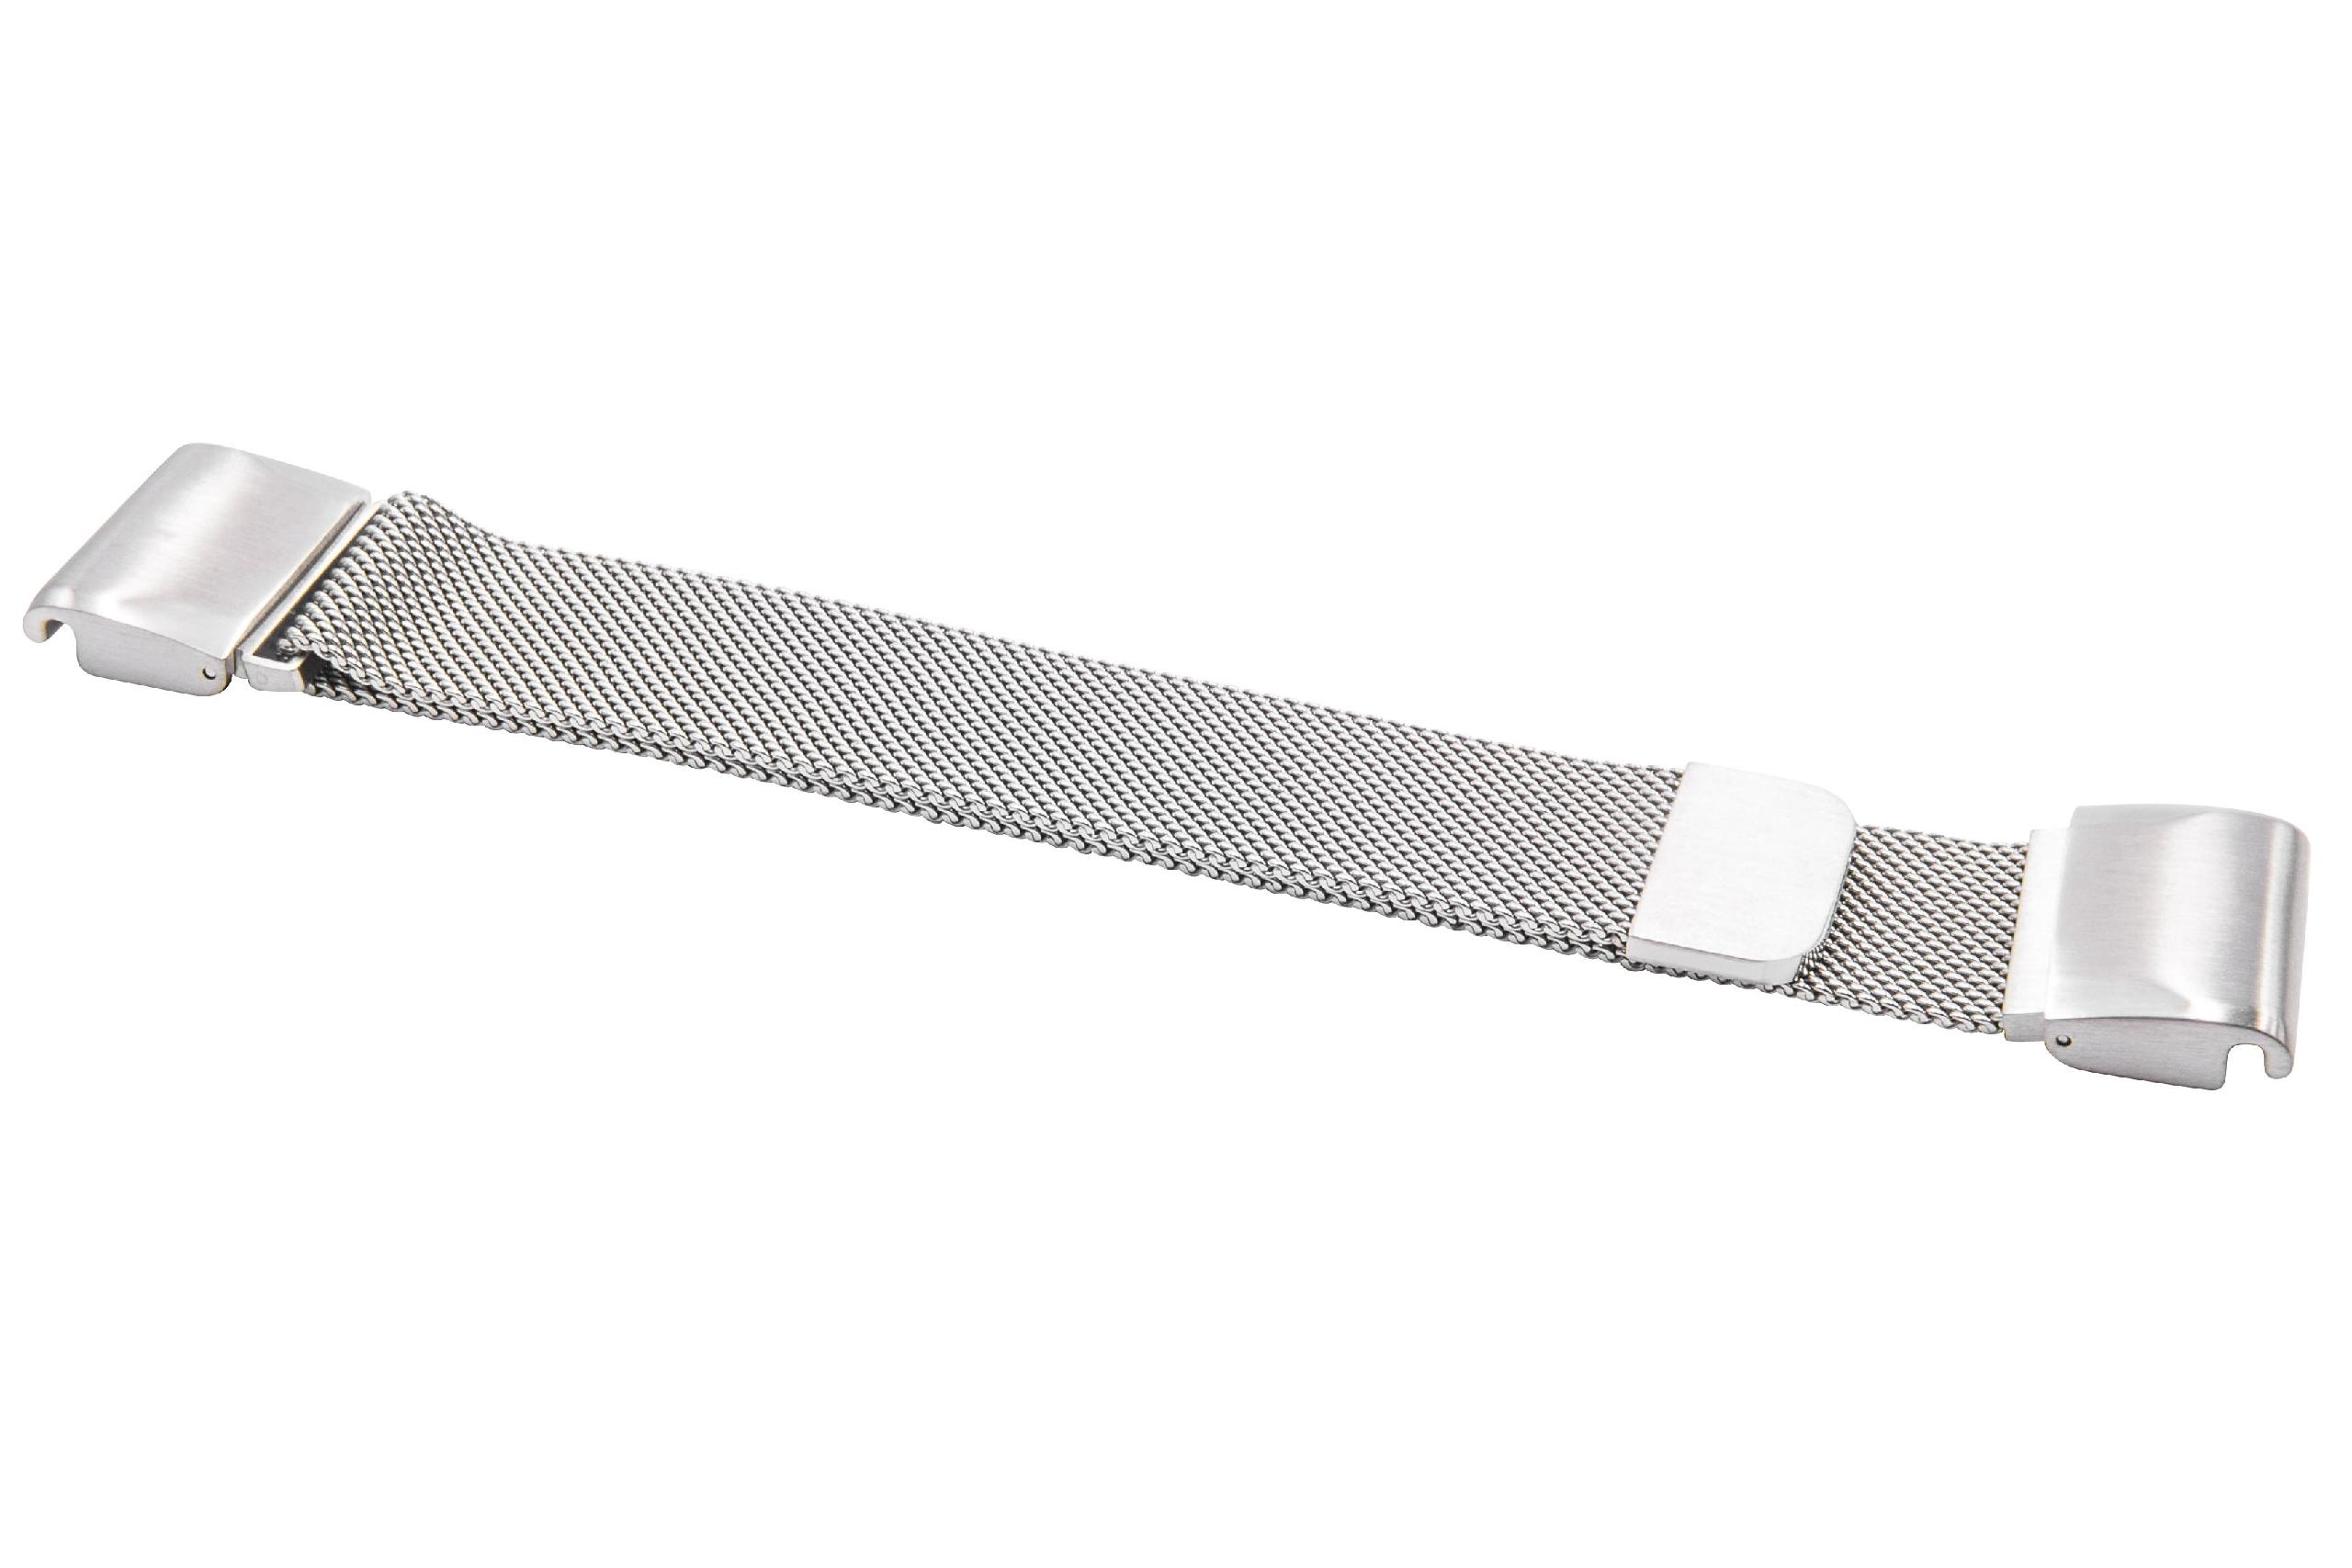 Armband für Garmin Quatix Smartwatch u.a. - Bis 248 mm Gelenkumfang, Edelstahl, silber